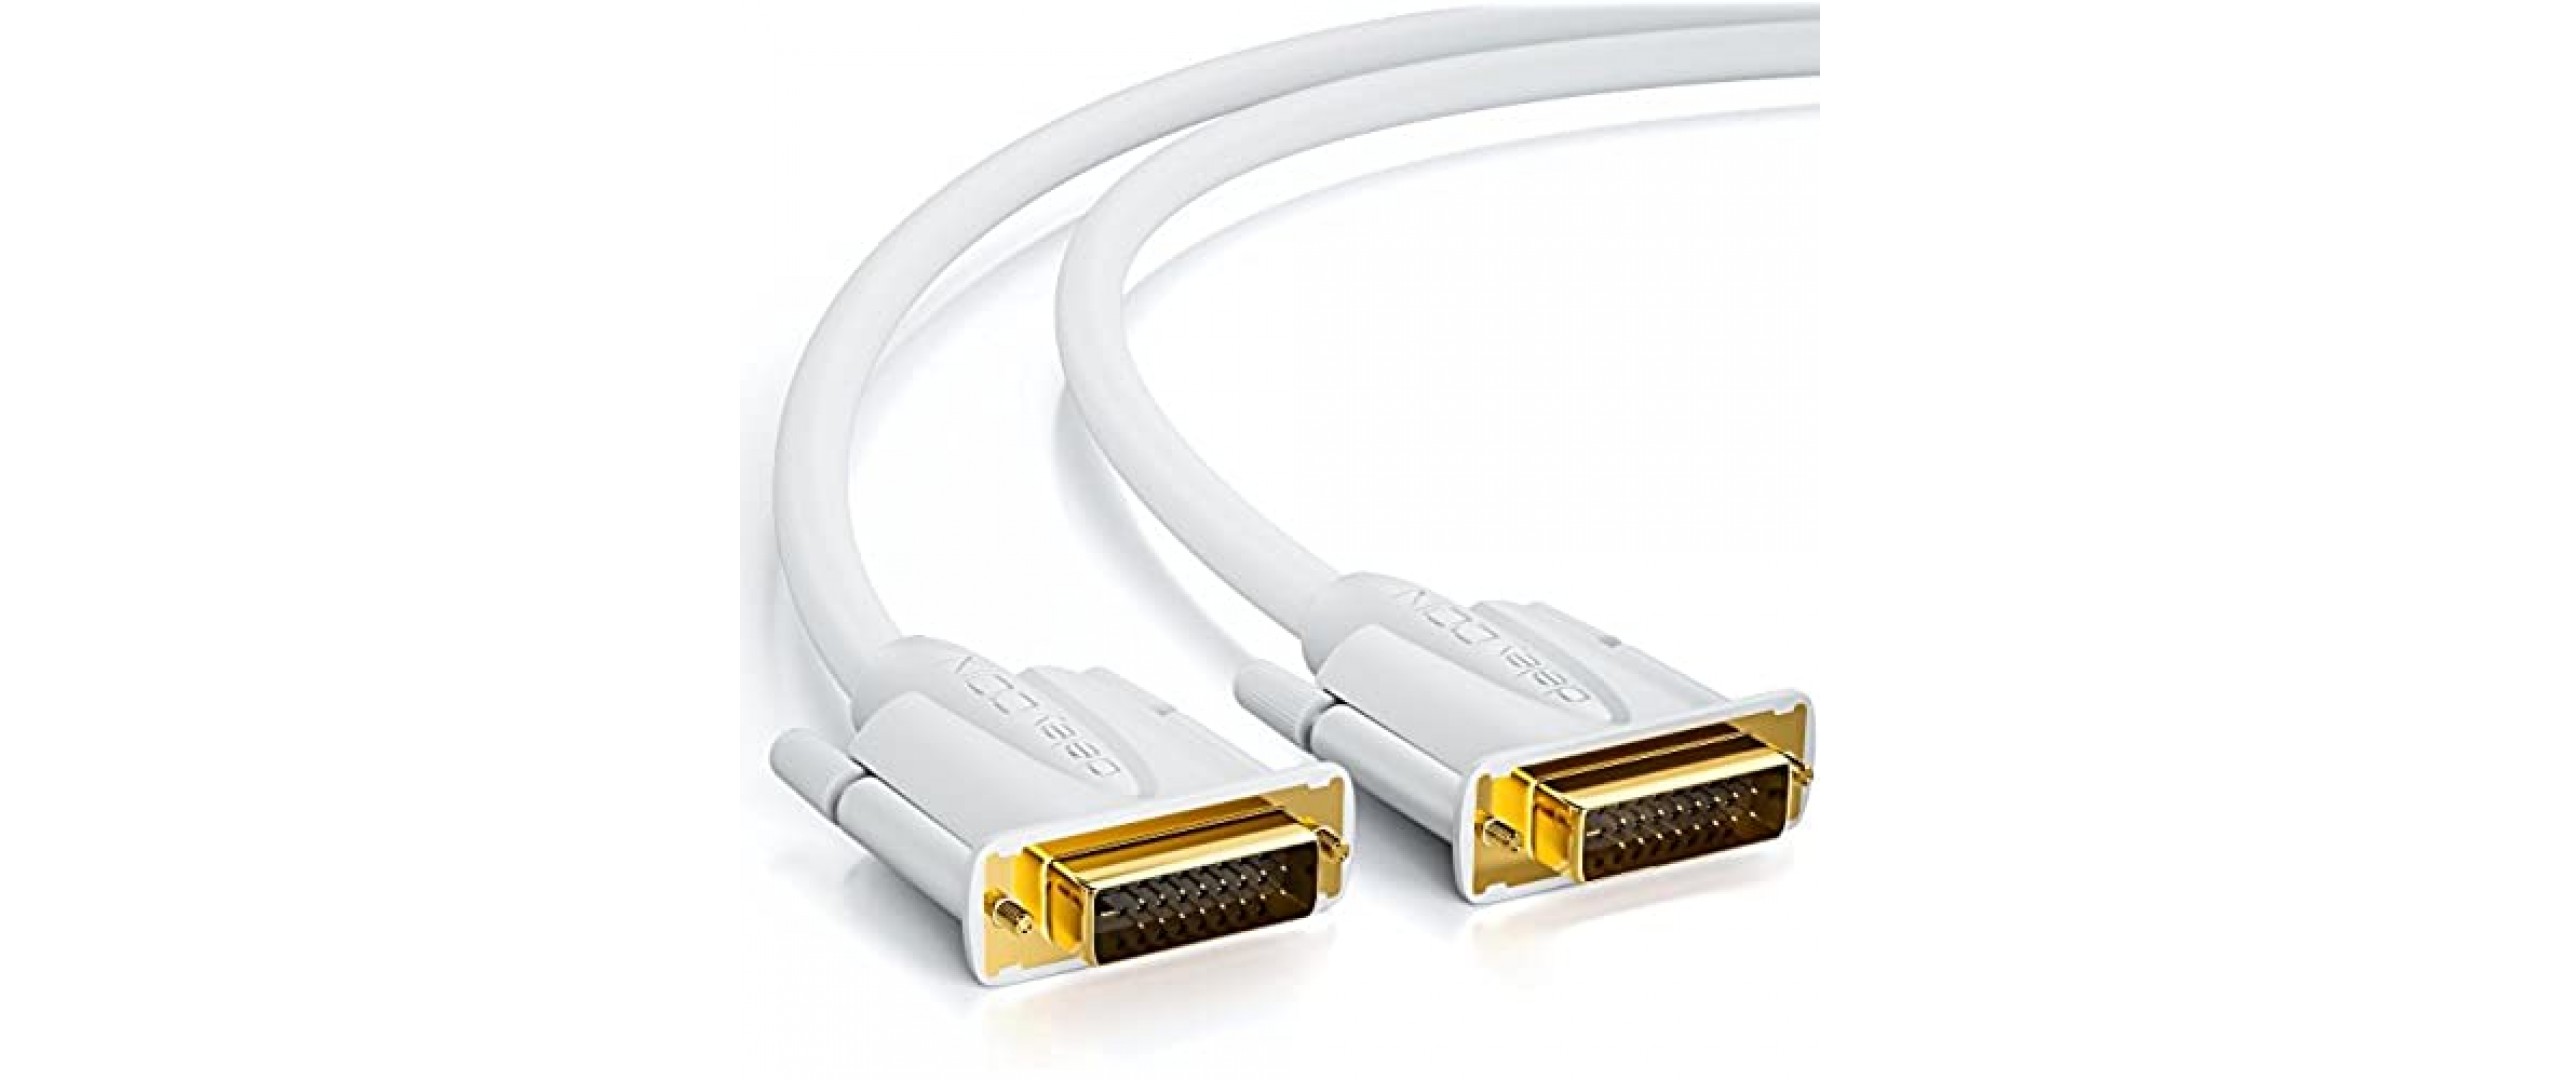 deleyCON 1 5m DVI Kabel Dual Link 24+1 HDTV Auflösungen bis 2560x1080 Full HD 1080p 3D Ready DVI-D Dual Link vergoldete Kontakte - Weiß